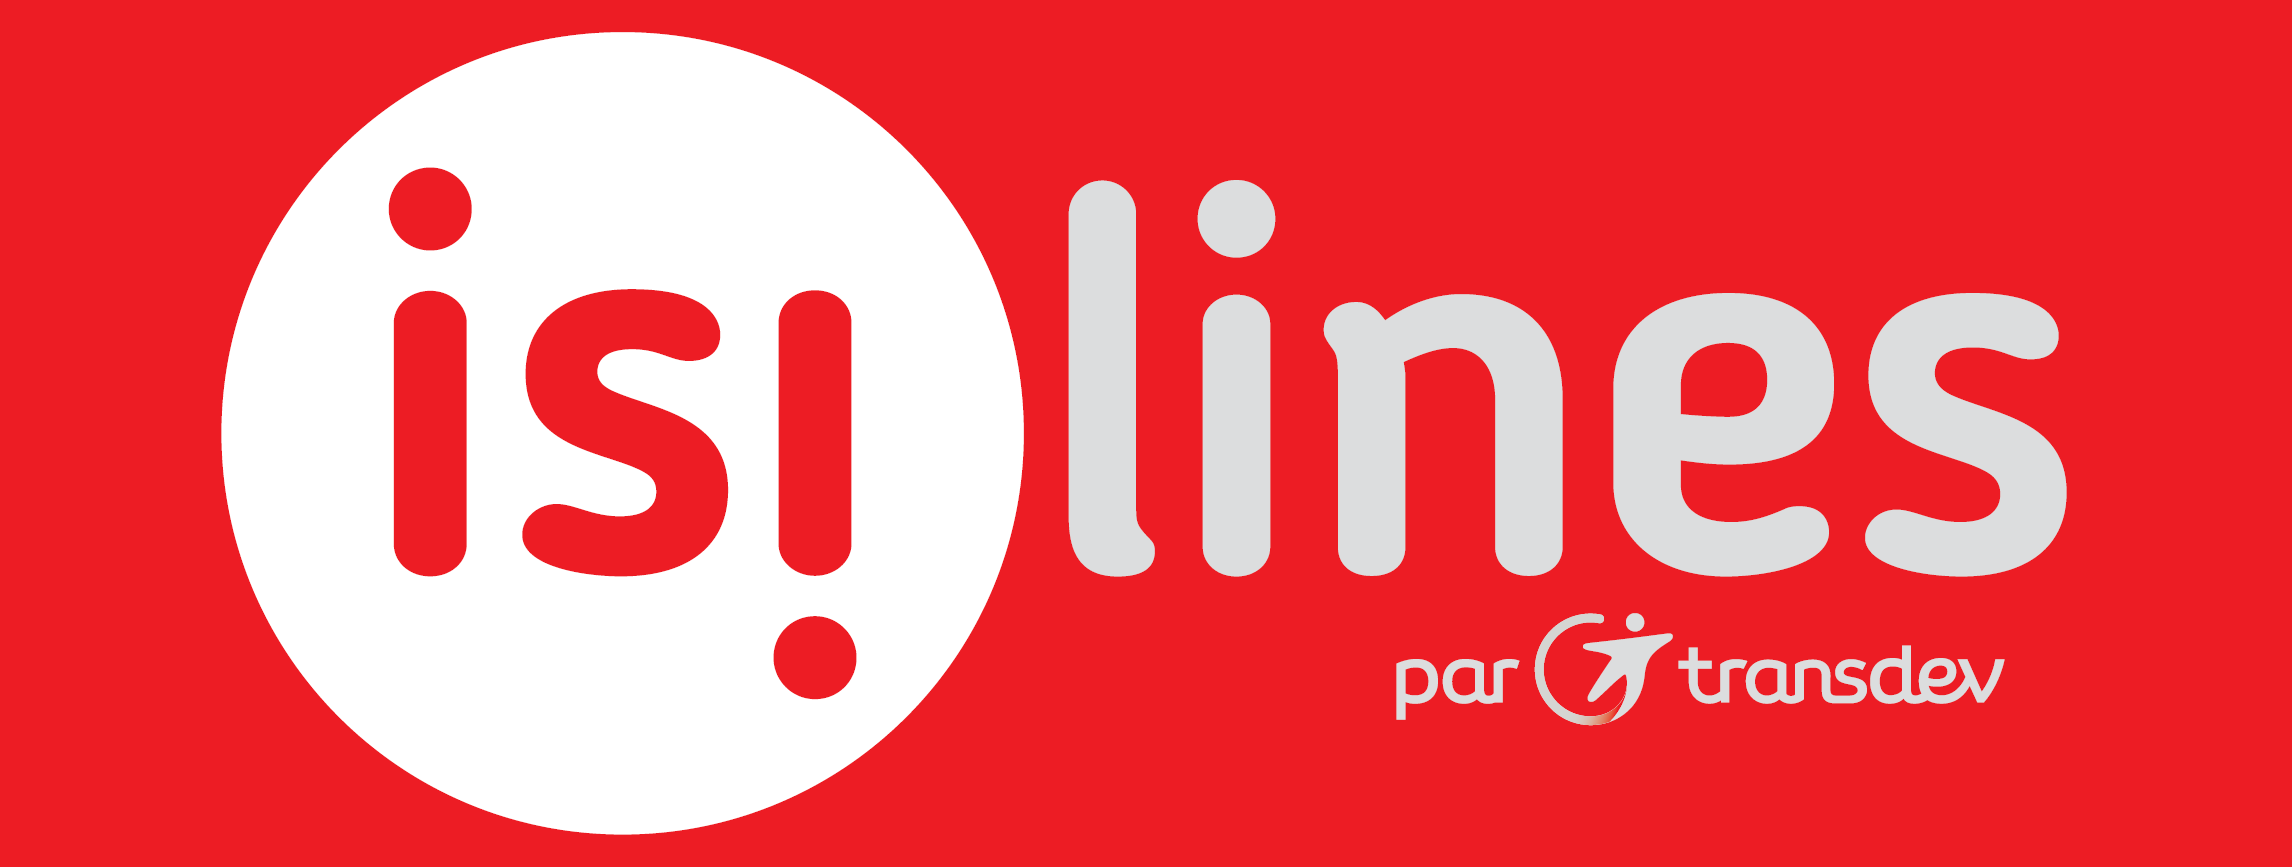 Logo Isilines compagnie de bus pas cher